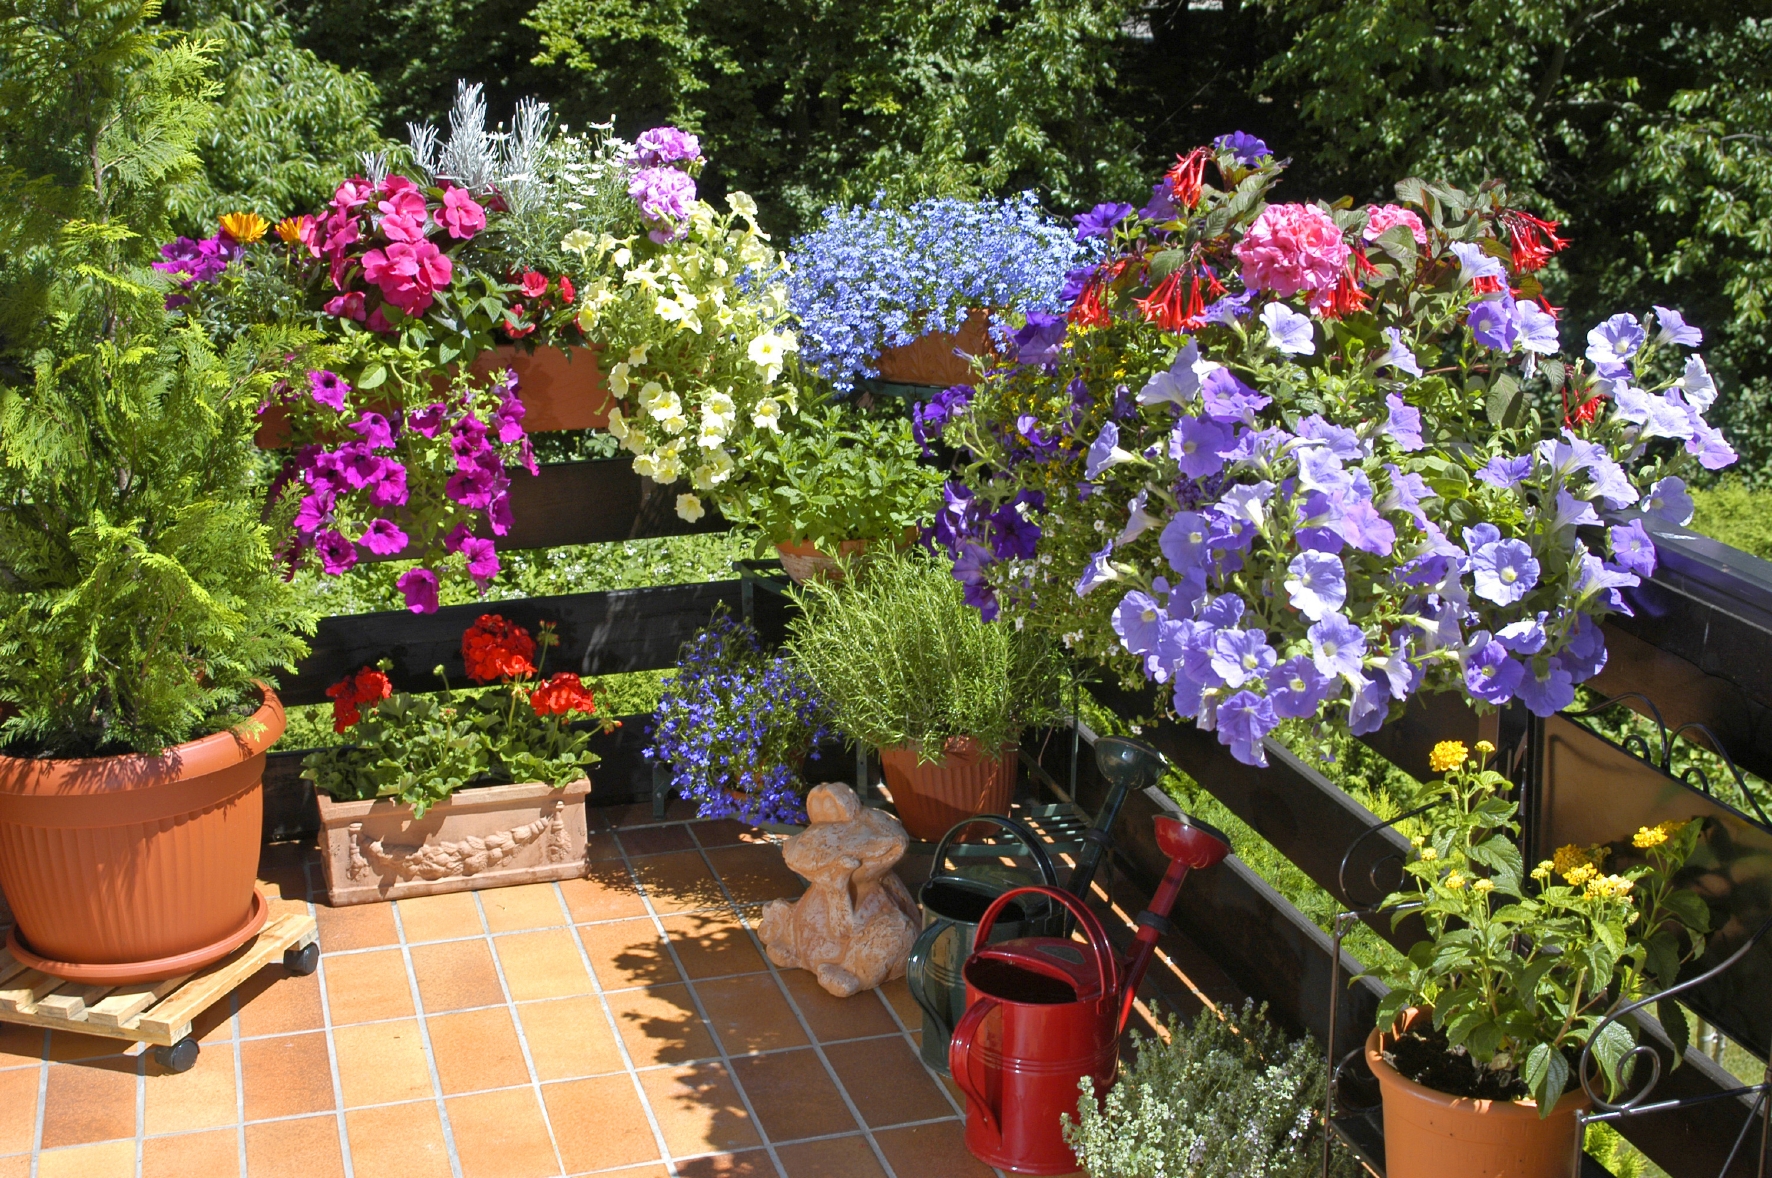 Balkonpflanzen können in Balkonkästen oder Blumenkübeln angepflanzt werden